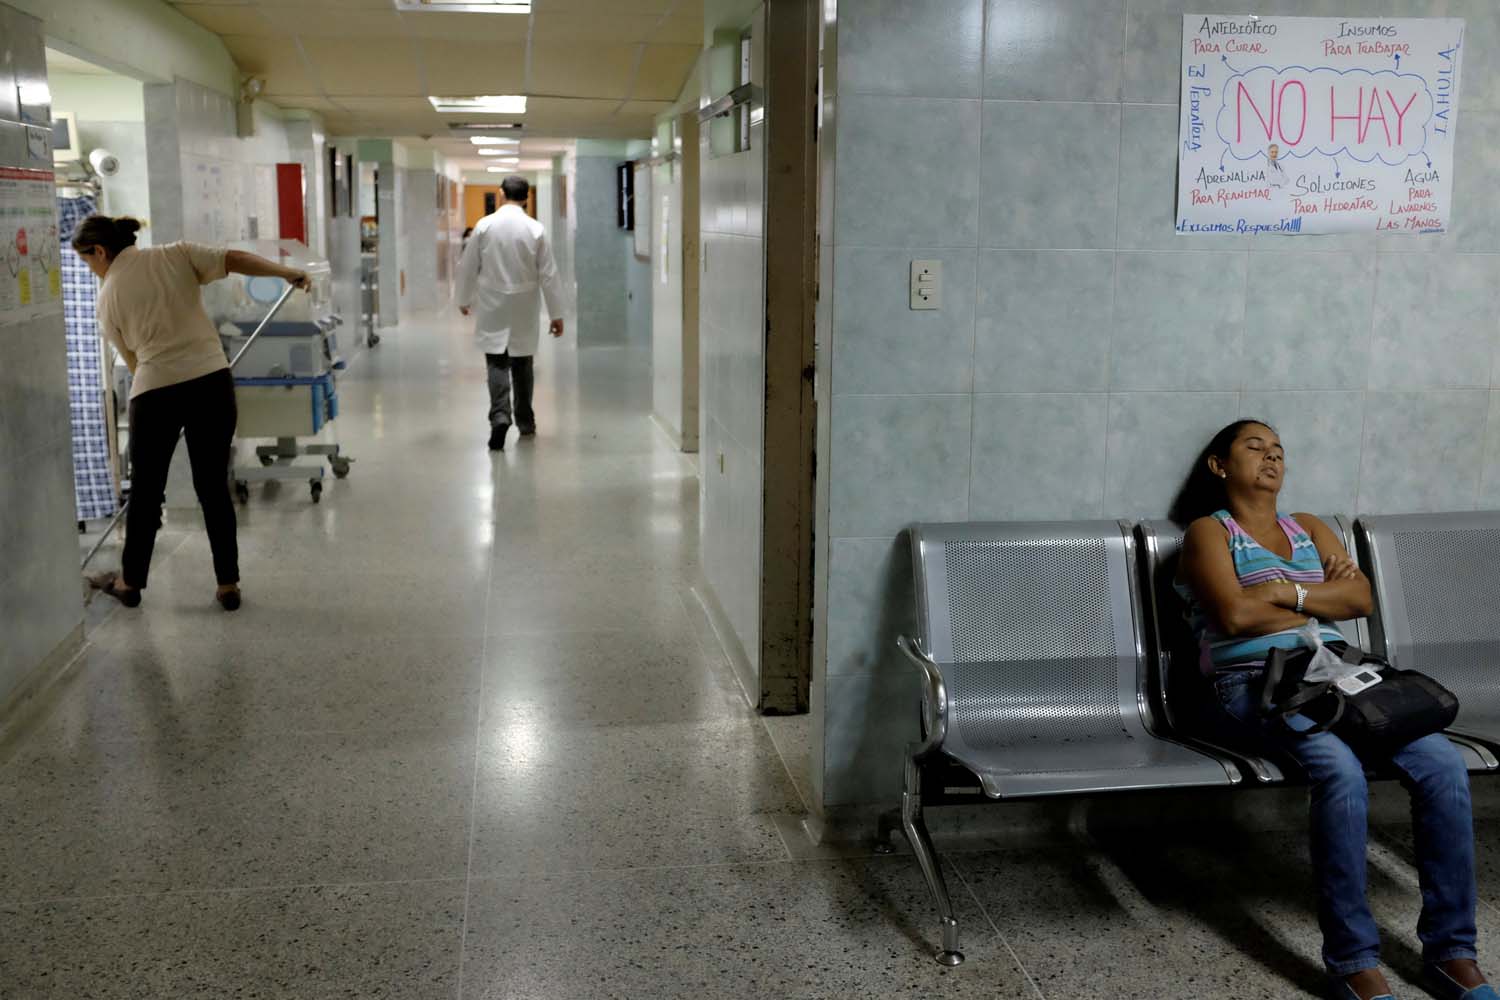 Encuesta en hospitales venezolanos revela cifras más alarmantes que las de países en guerra